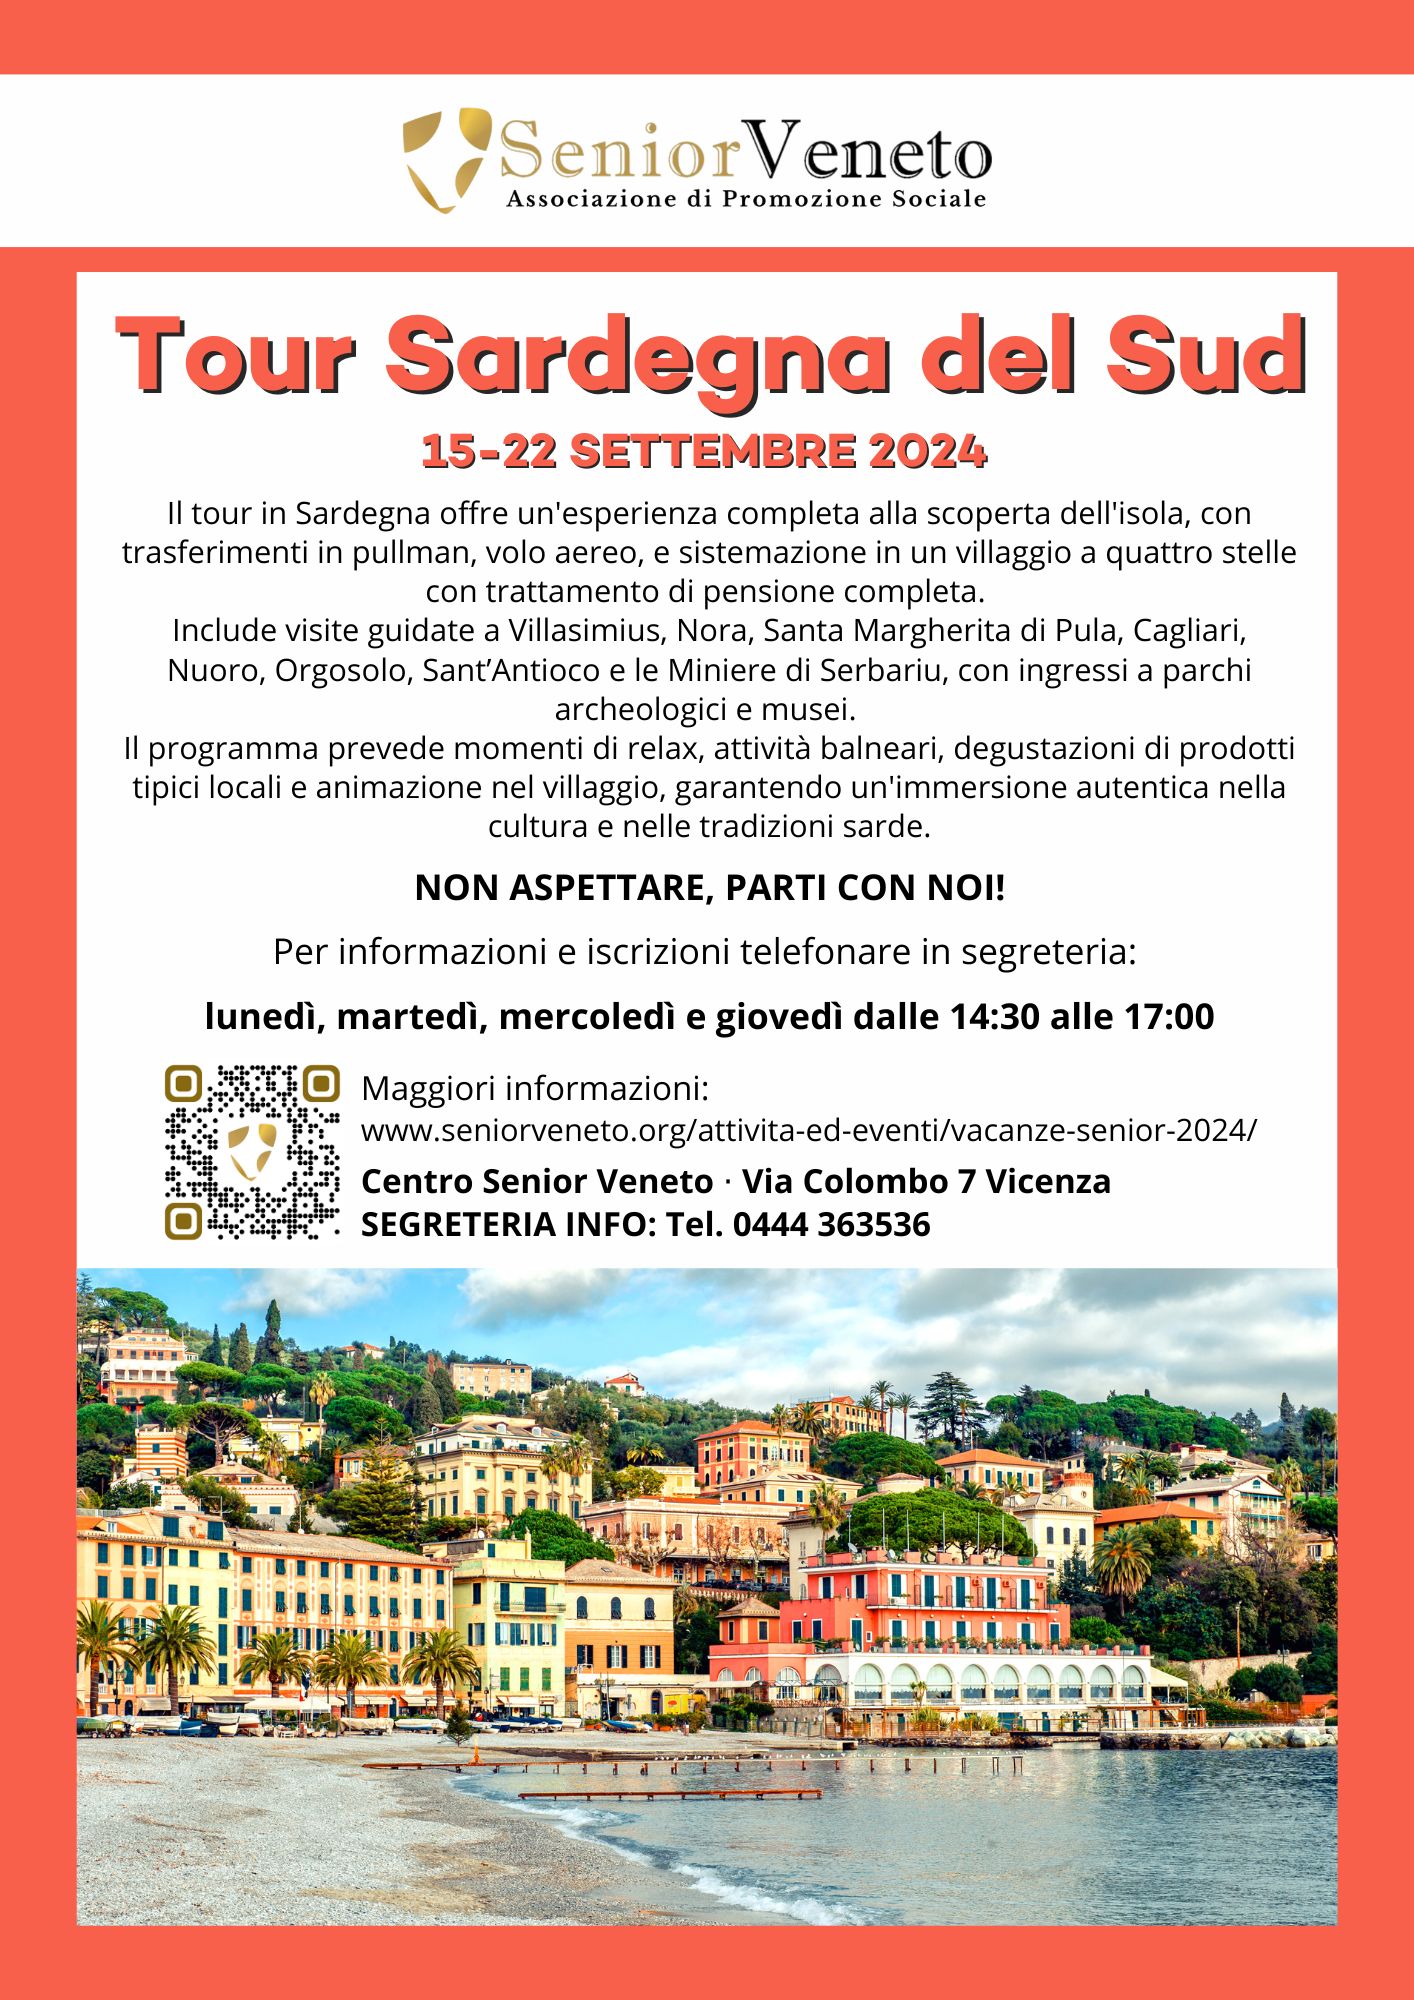 Tour in Sardegna